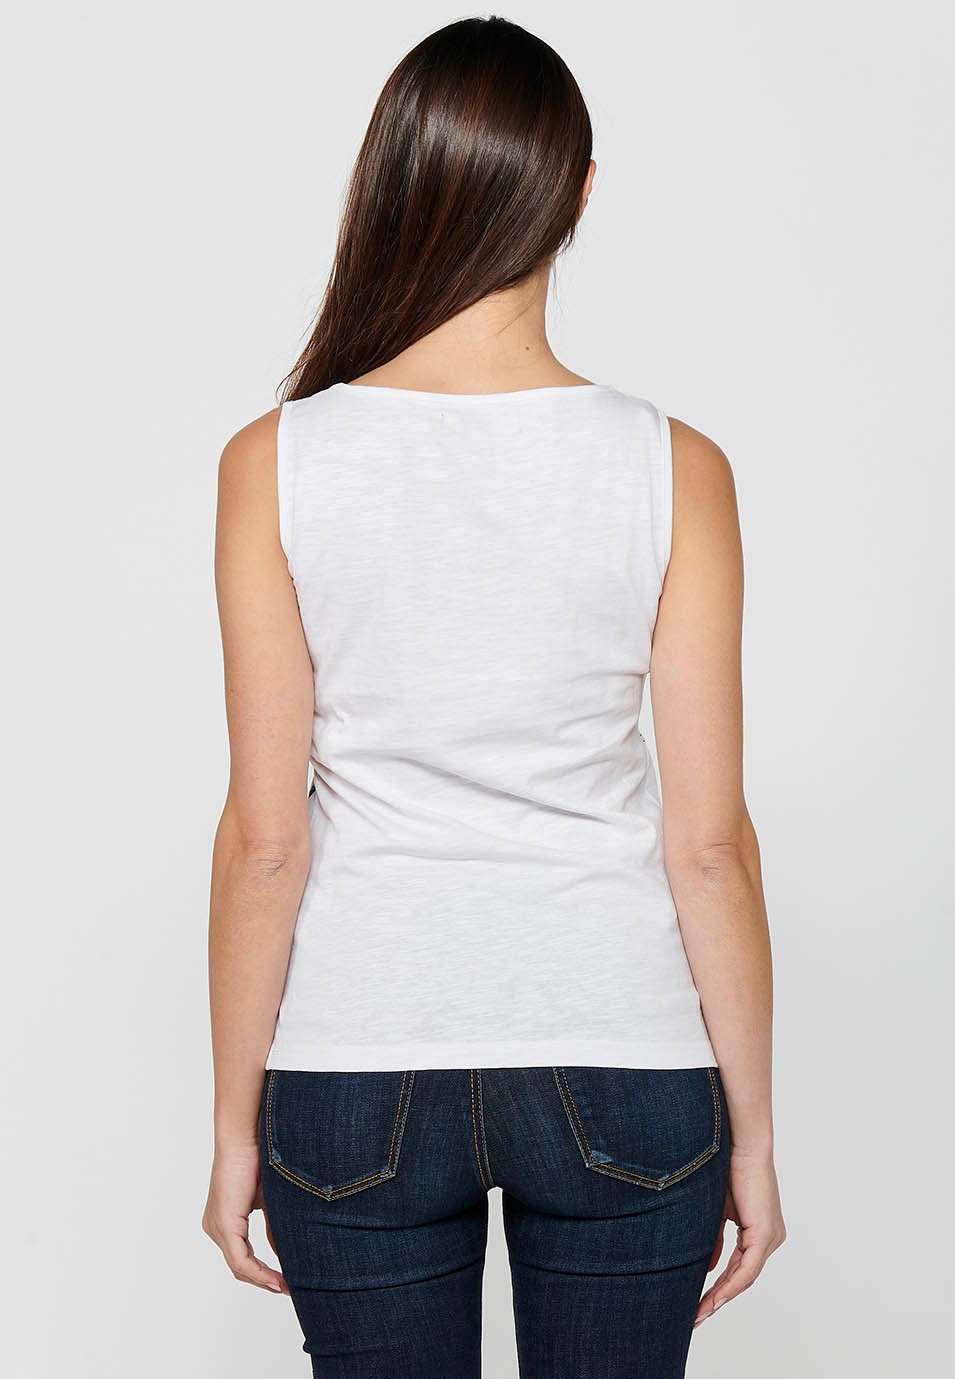 Ärmelloses T-Shirt mit weißem Frontdruck für Damen 3